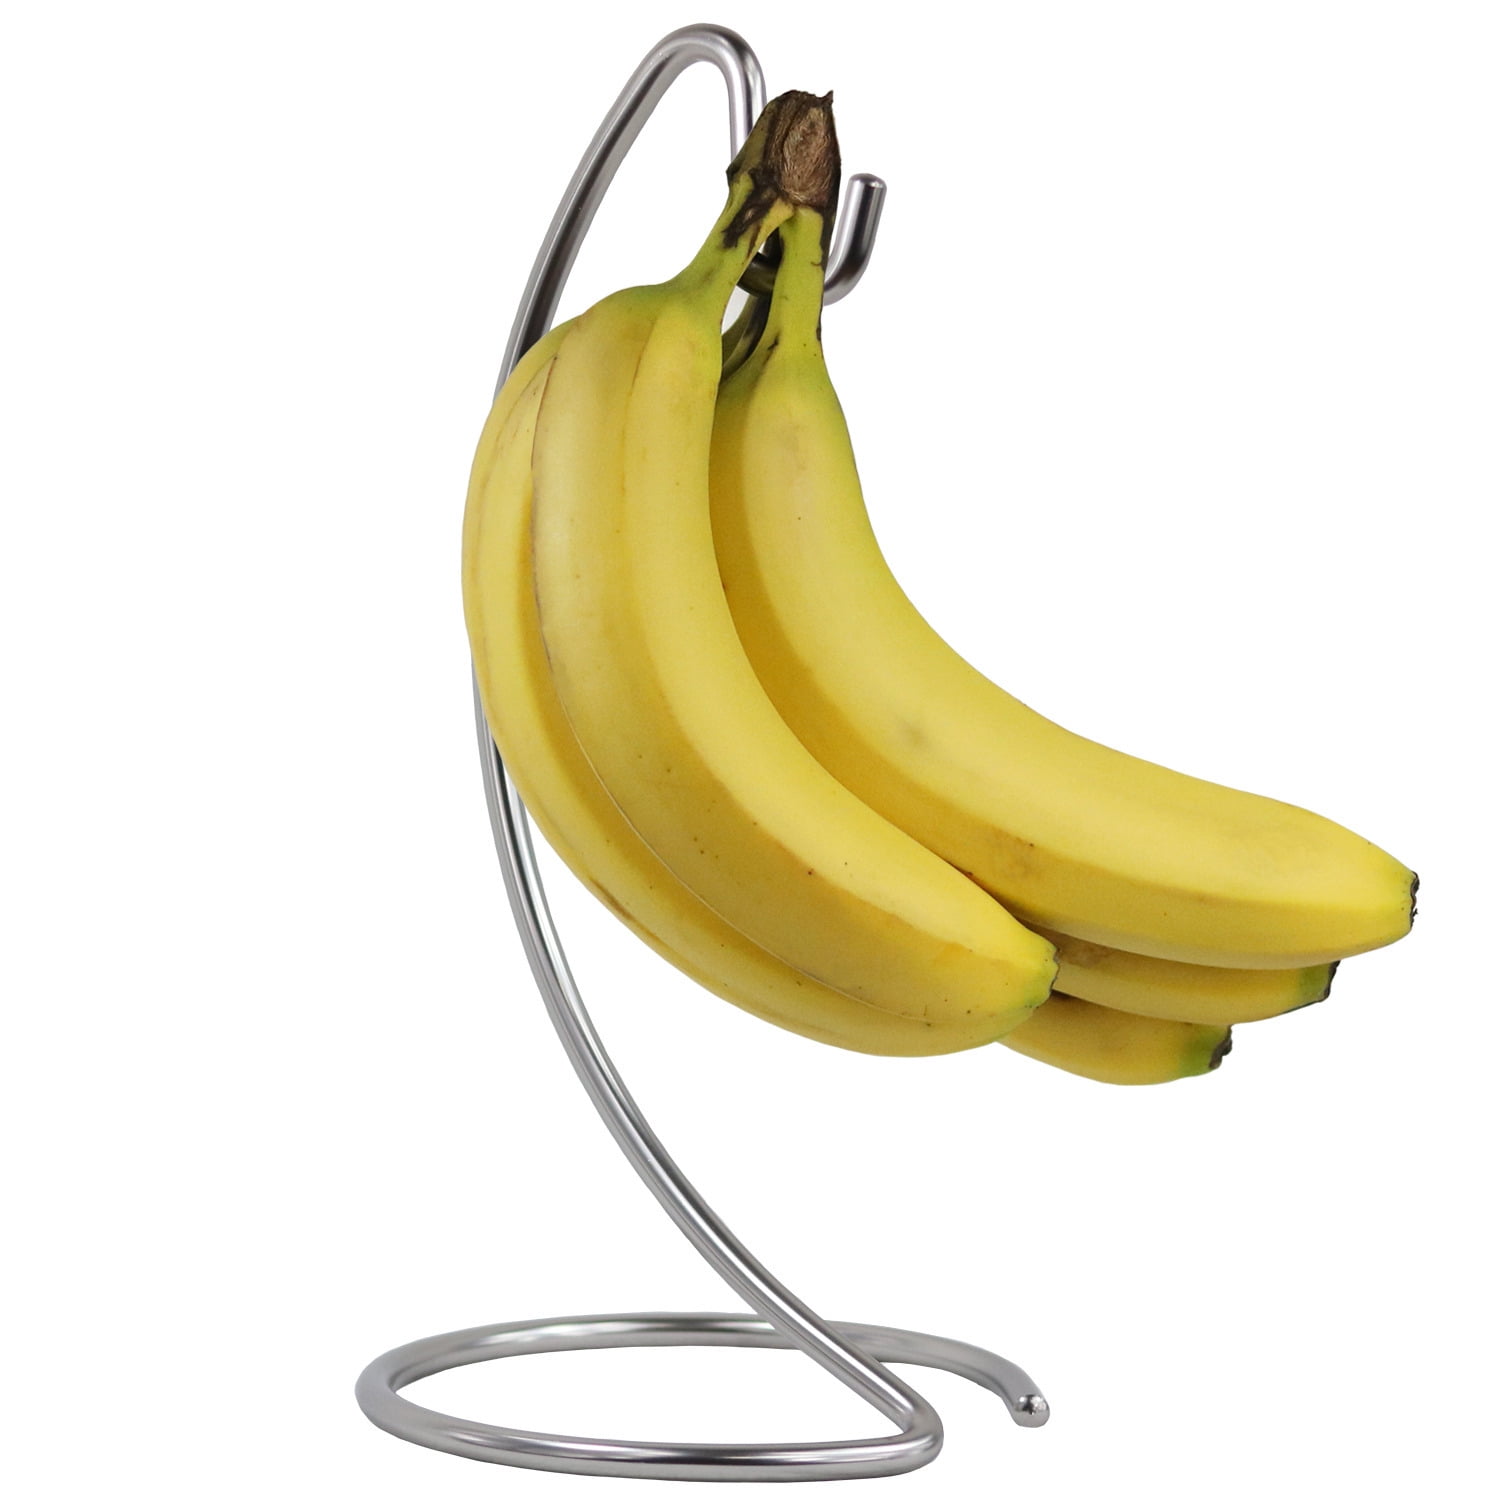 4844 Chrome Banana Tree Holder Ripen Fruit Evenly Prevents Bruising & Spoiling 